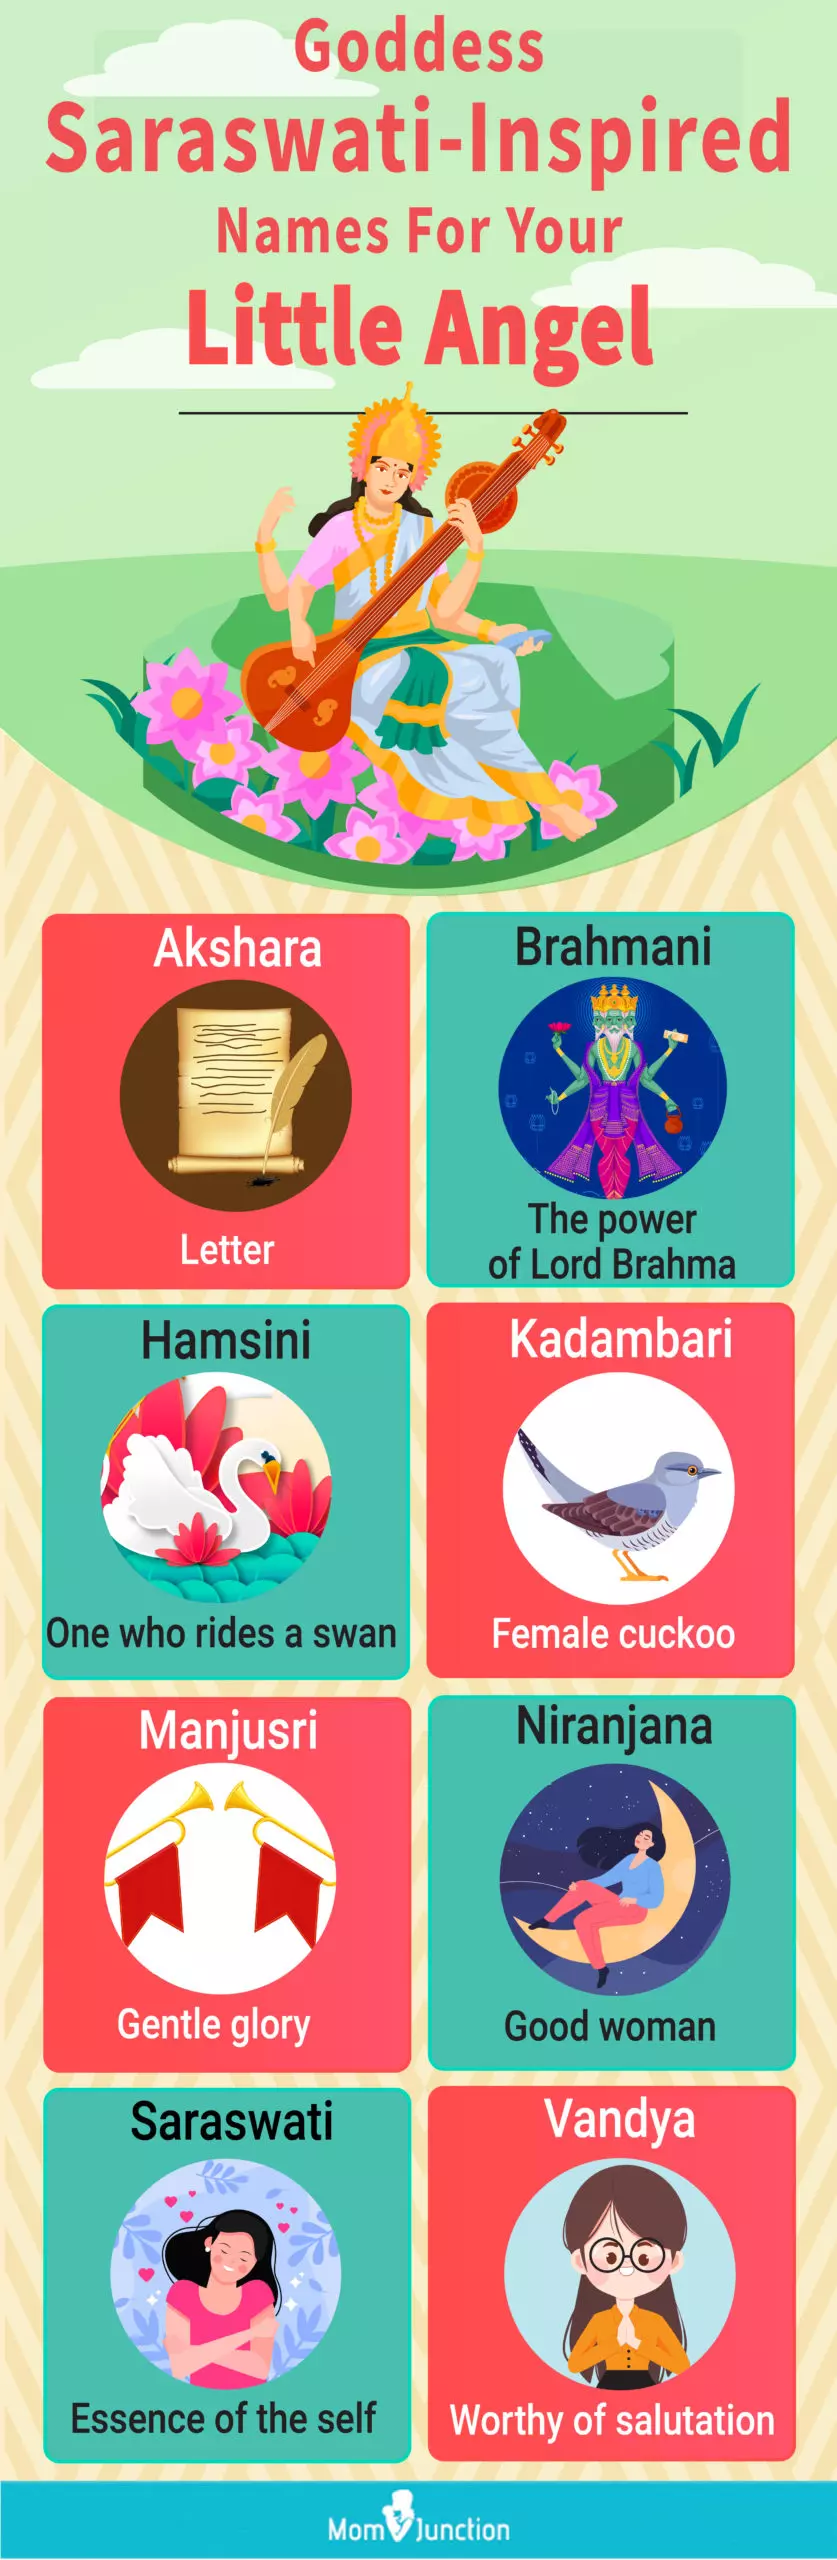 goddess saraswati inspired names for your little angel (infographic)